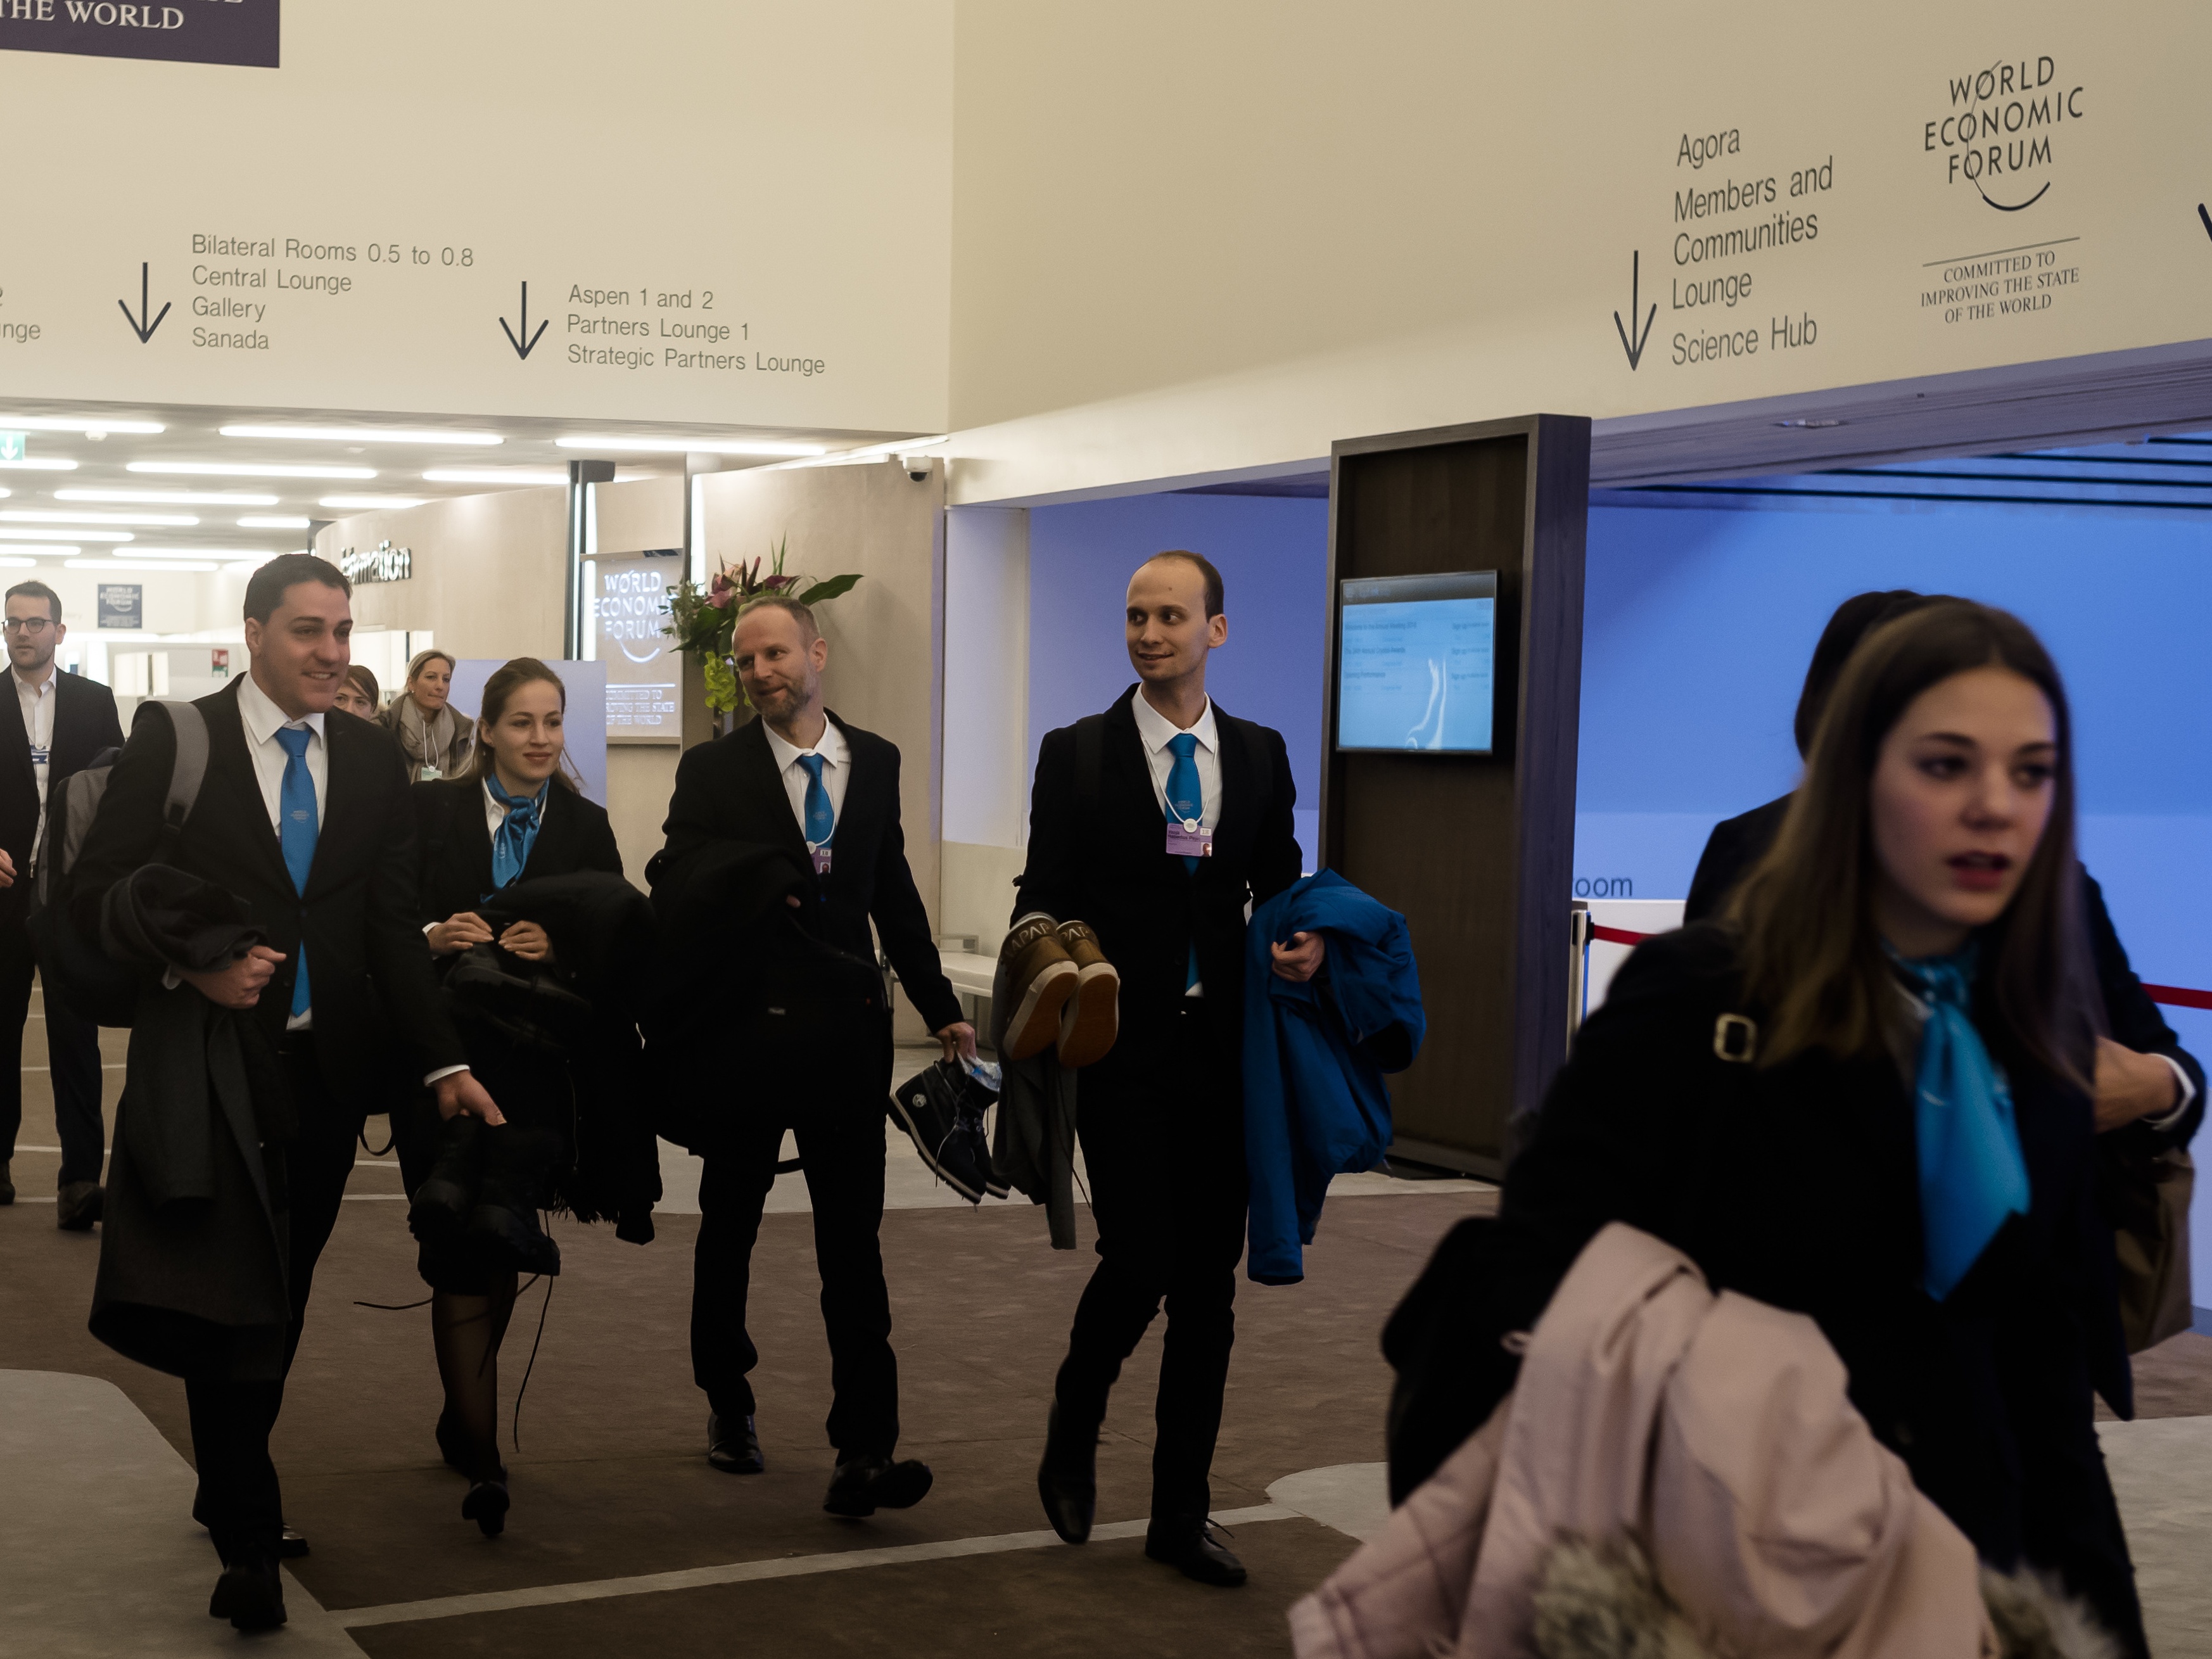 Delegates arriving at Davos (Markus Schreiber/AP)